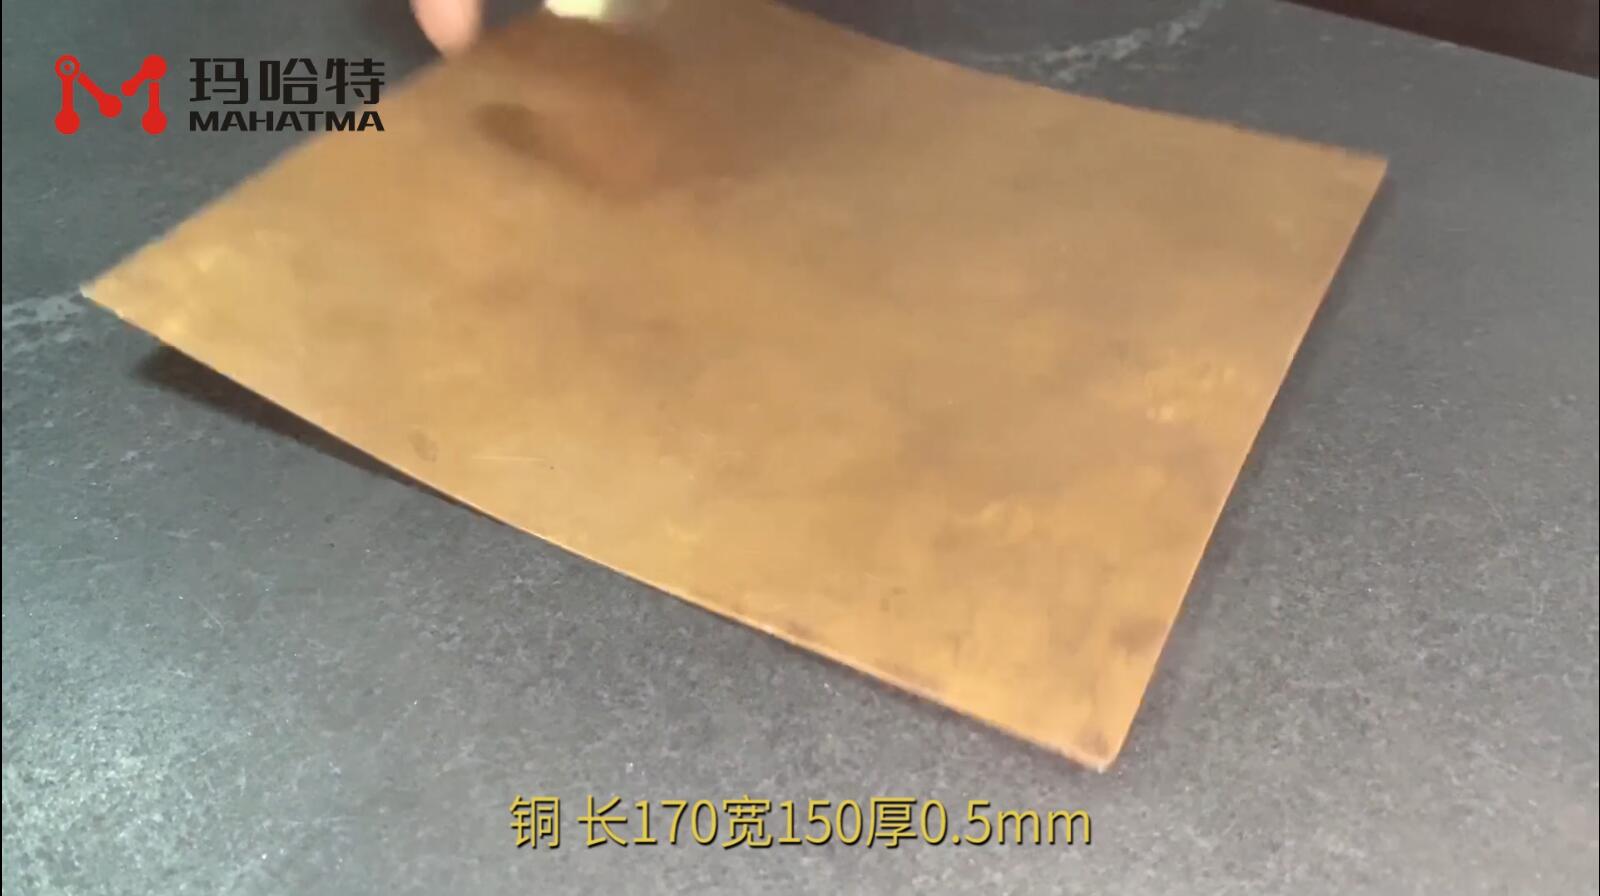 铜 MHT20-400 长方形170宽150厚0.5mm